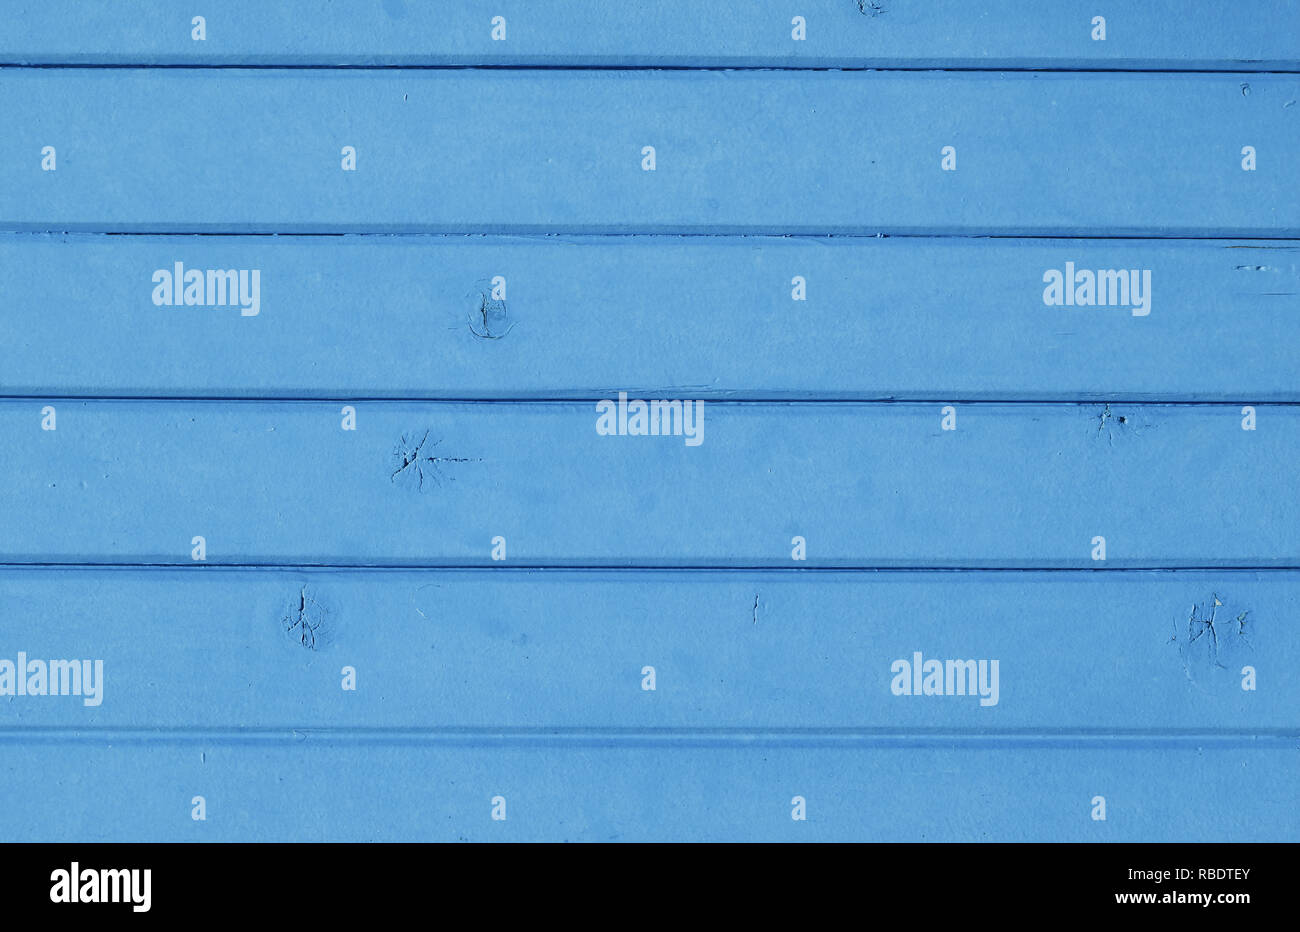 Close up texture de fond de planches en bois peint bleu vintage style rustique, panneau mural Banque D'Images